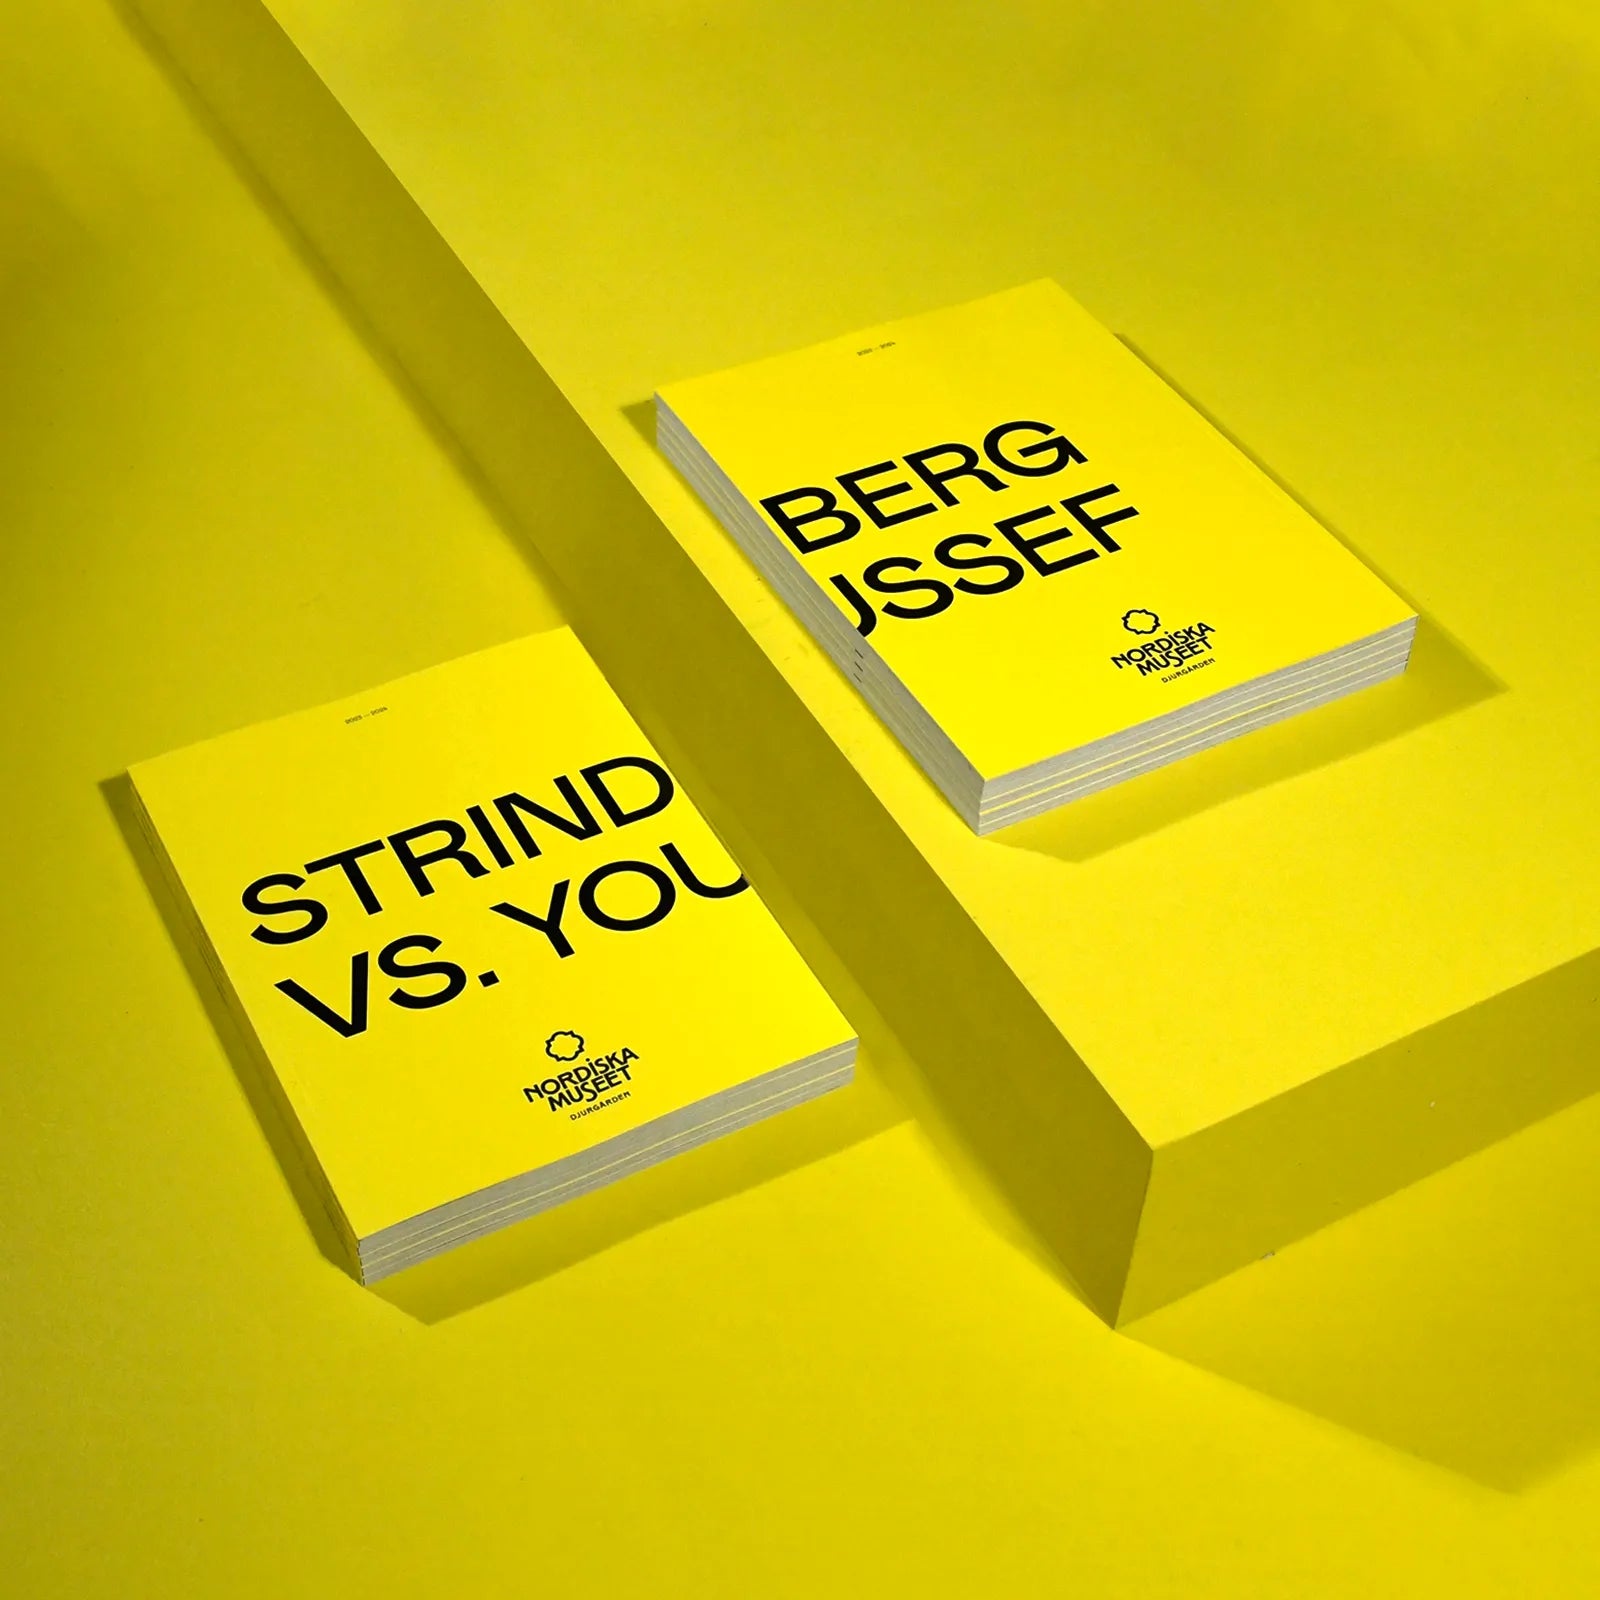 utstallningskatalog-till-utstallningen-strindberg-vs-youseff-ligger-pa-ett-gult